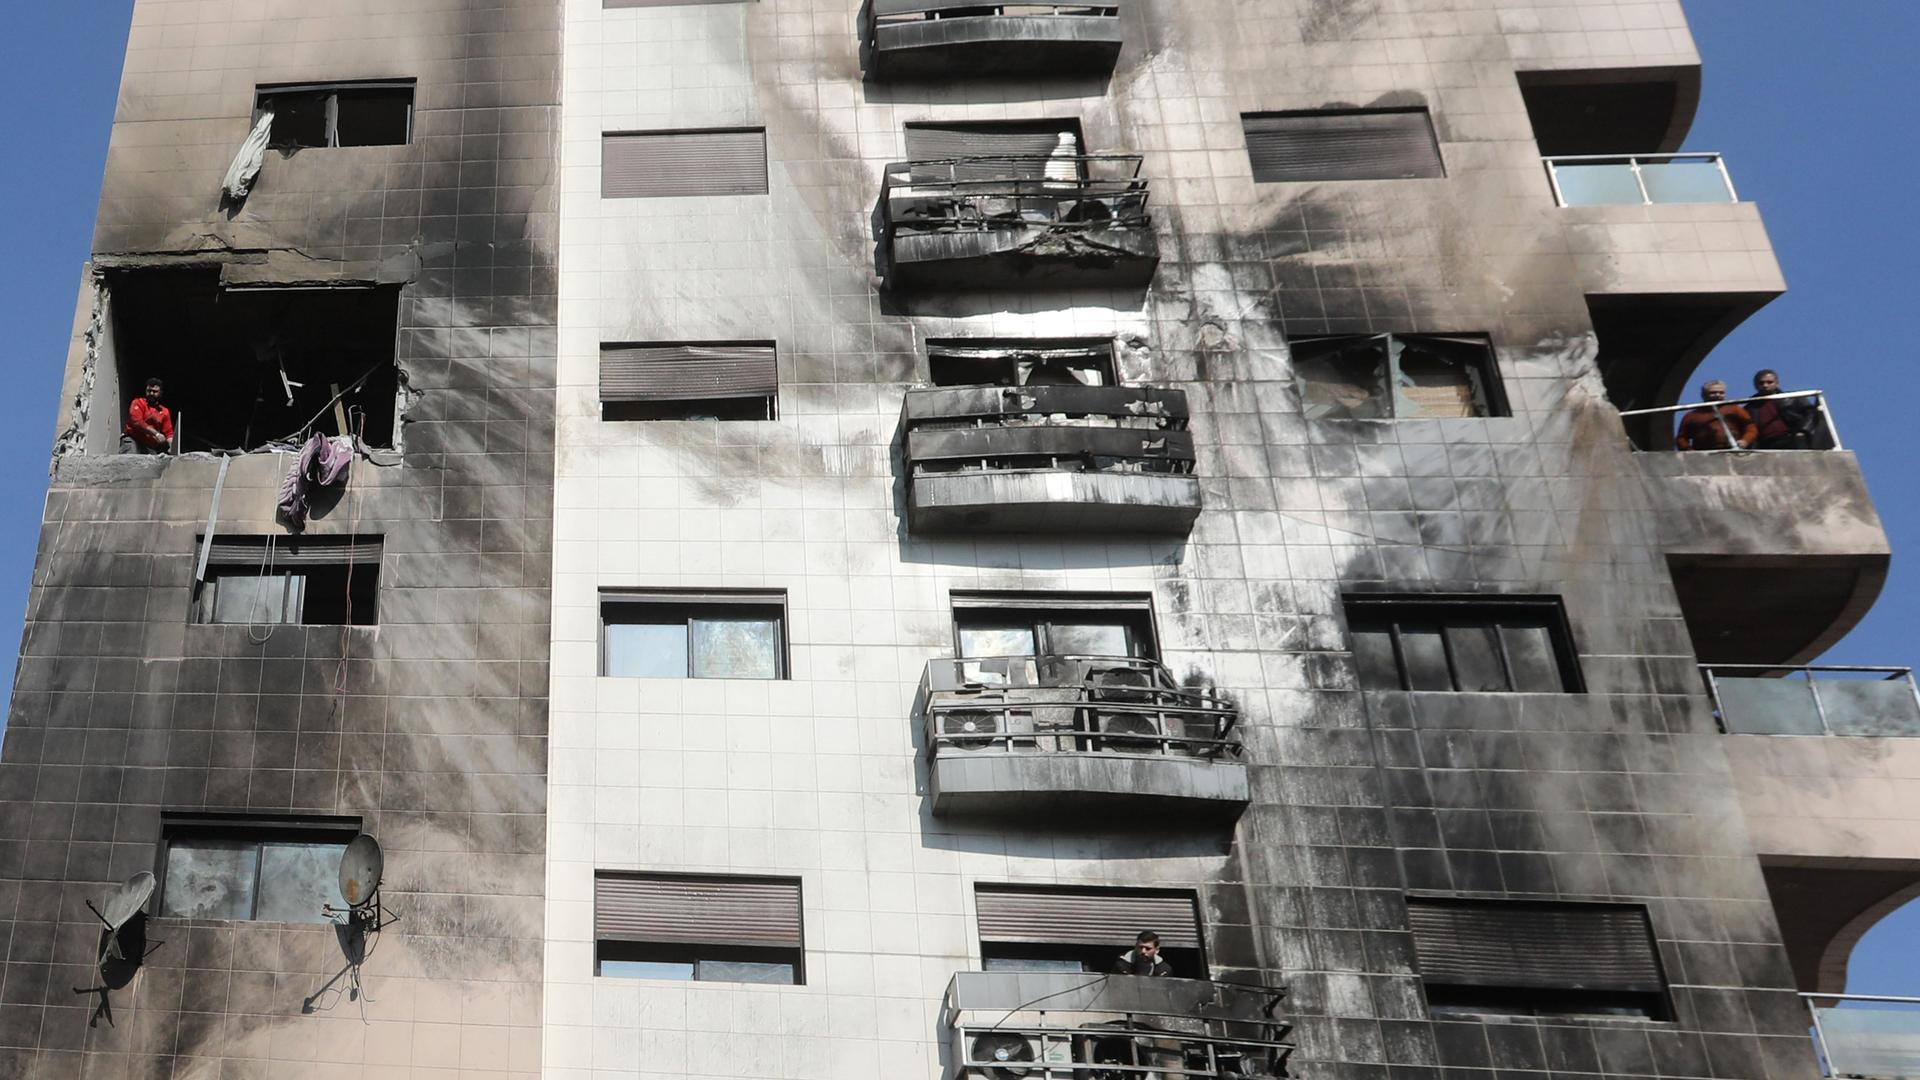 Menschen untersuchen die Schäden an einem Gebäude nach einem israelischen Angriff. Fenster sind zerstört, die Hauswand ist durch Rauch schwarz gefärbt.